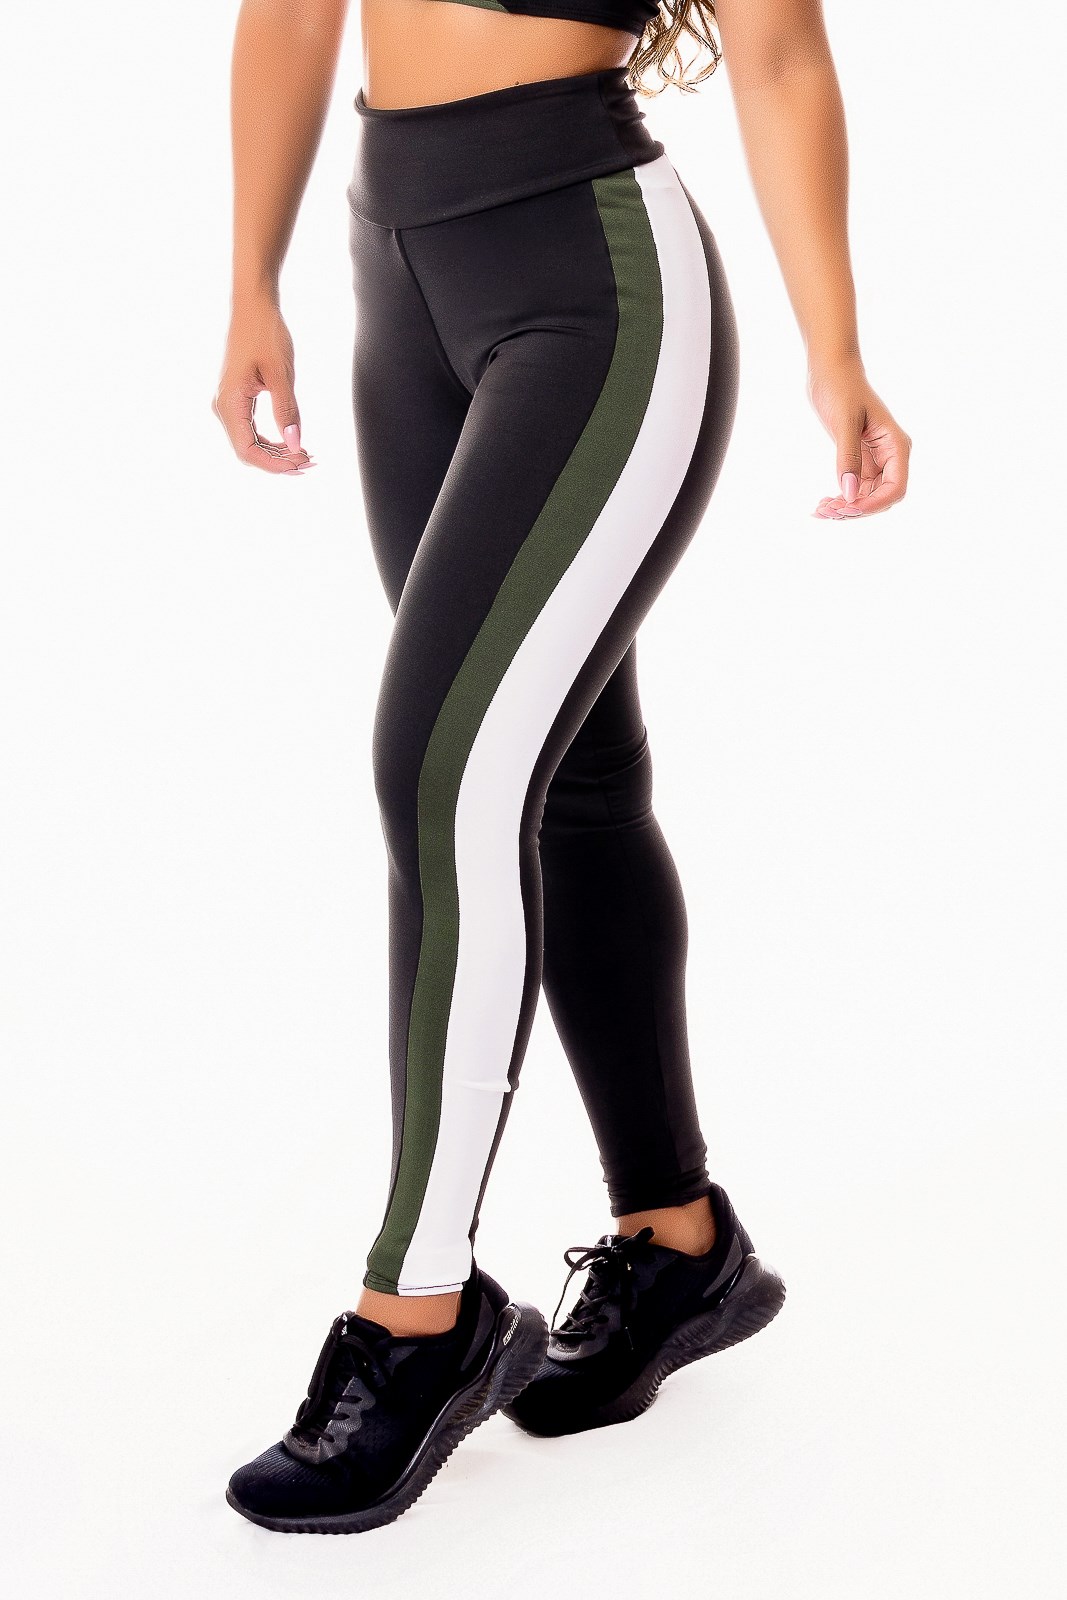 https://racymodas.fbitsstatic.net/img/p/calca-legging-fitness-academia-preta-com-verde-militar-e-vivo-branco-cintura-alta-ref-sv48-78662/313720.jpg